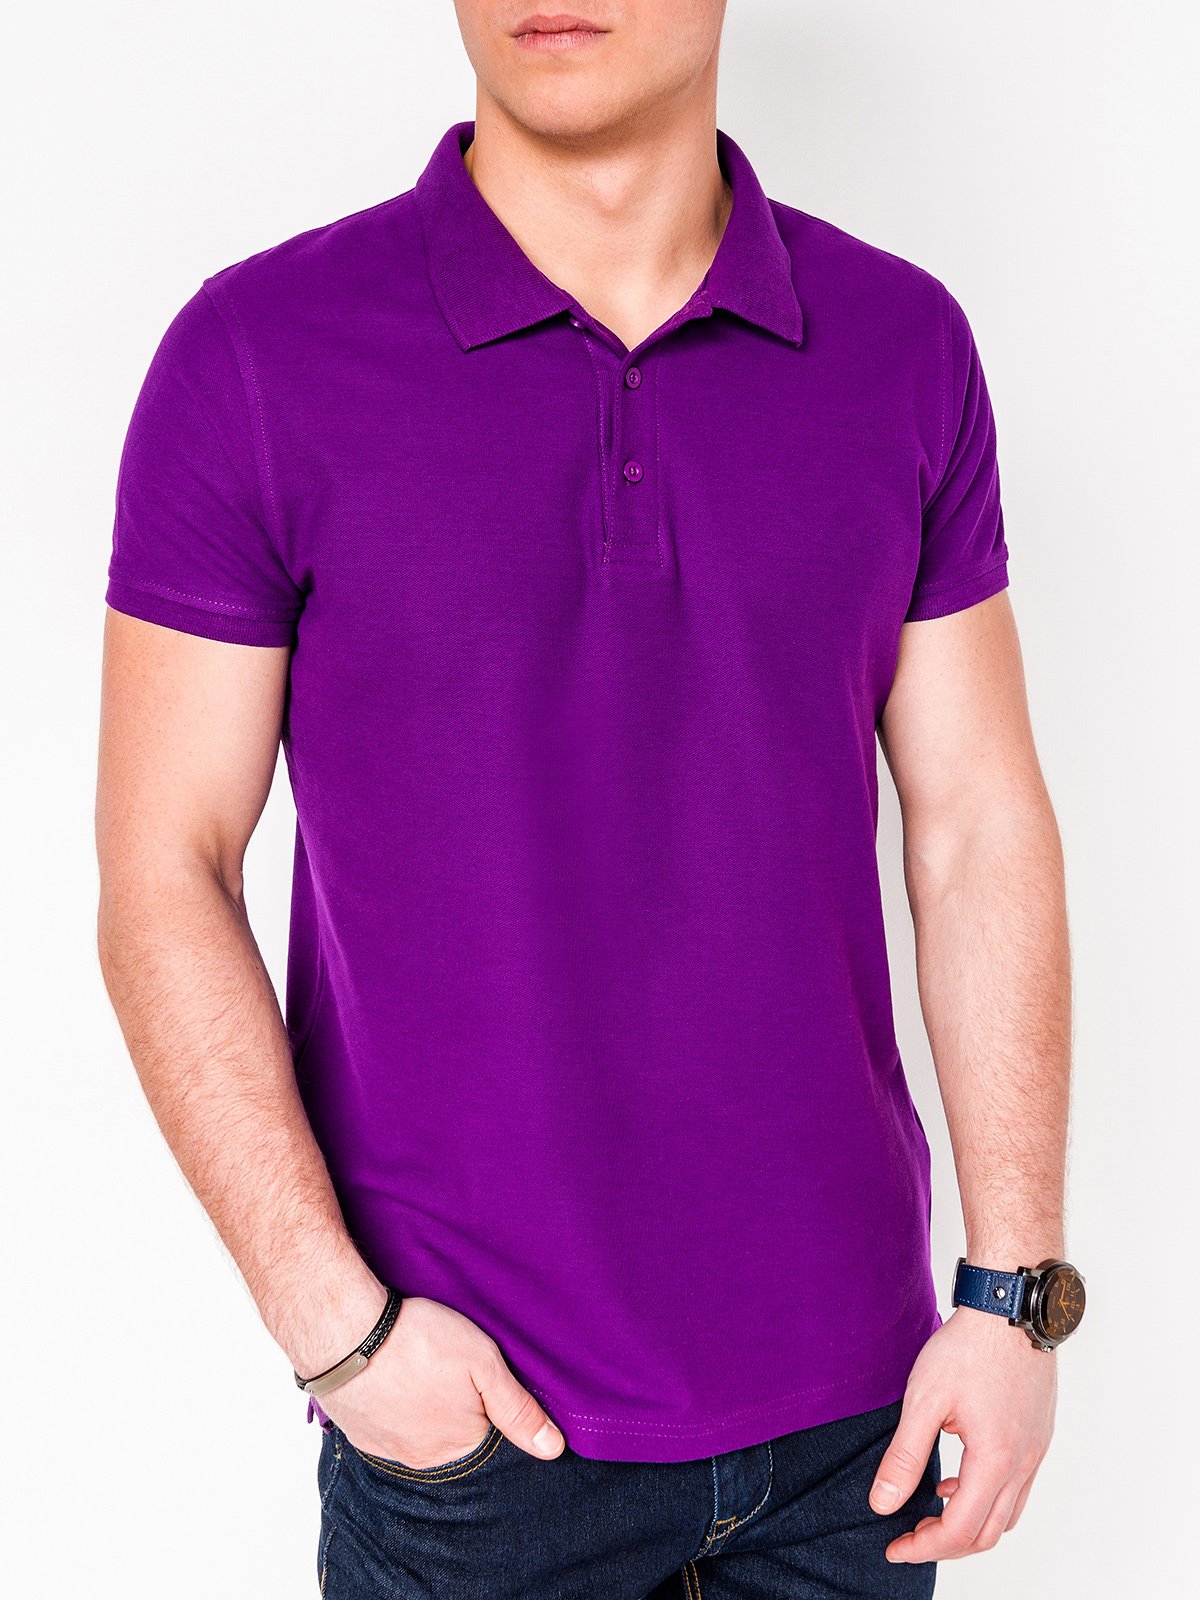 Men's plain polo shirt S715 - violet | MODONE wholesale - Clothing For Men